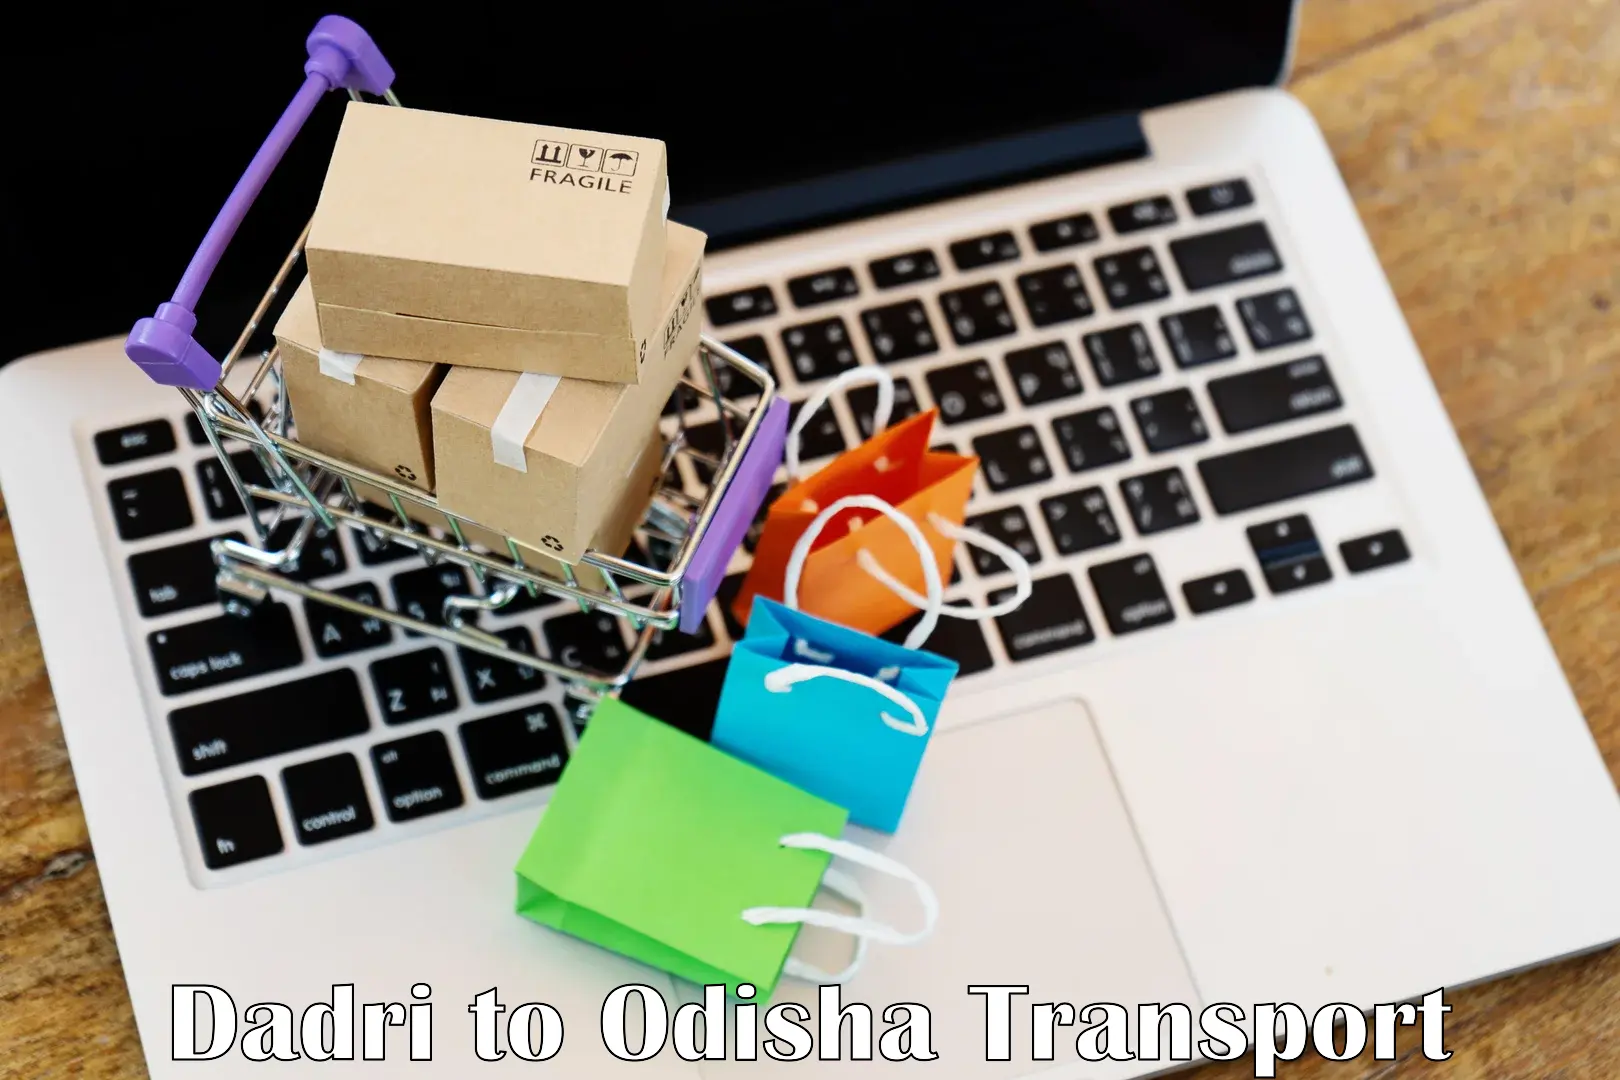 Online transport booking Dadri to Jaipatna